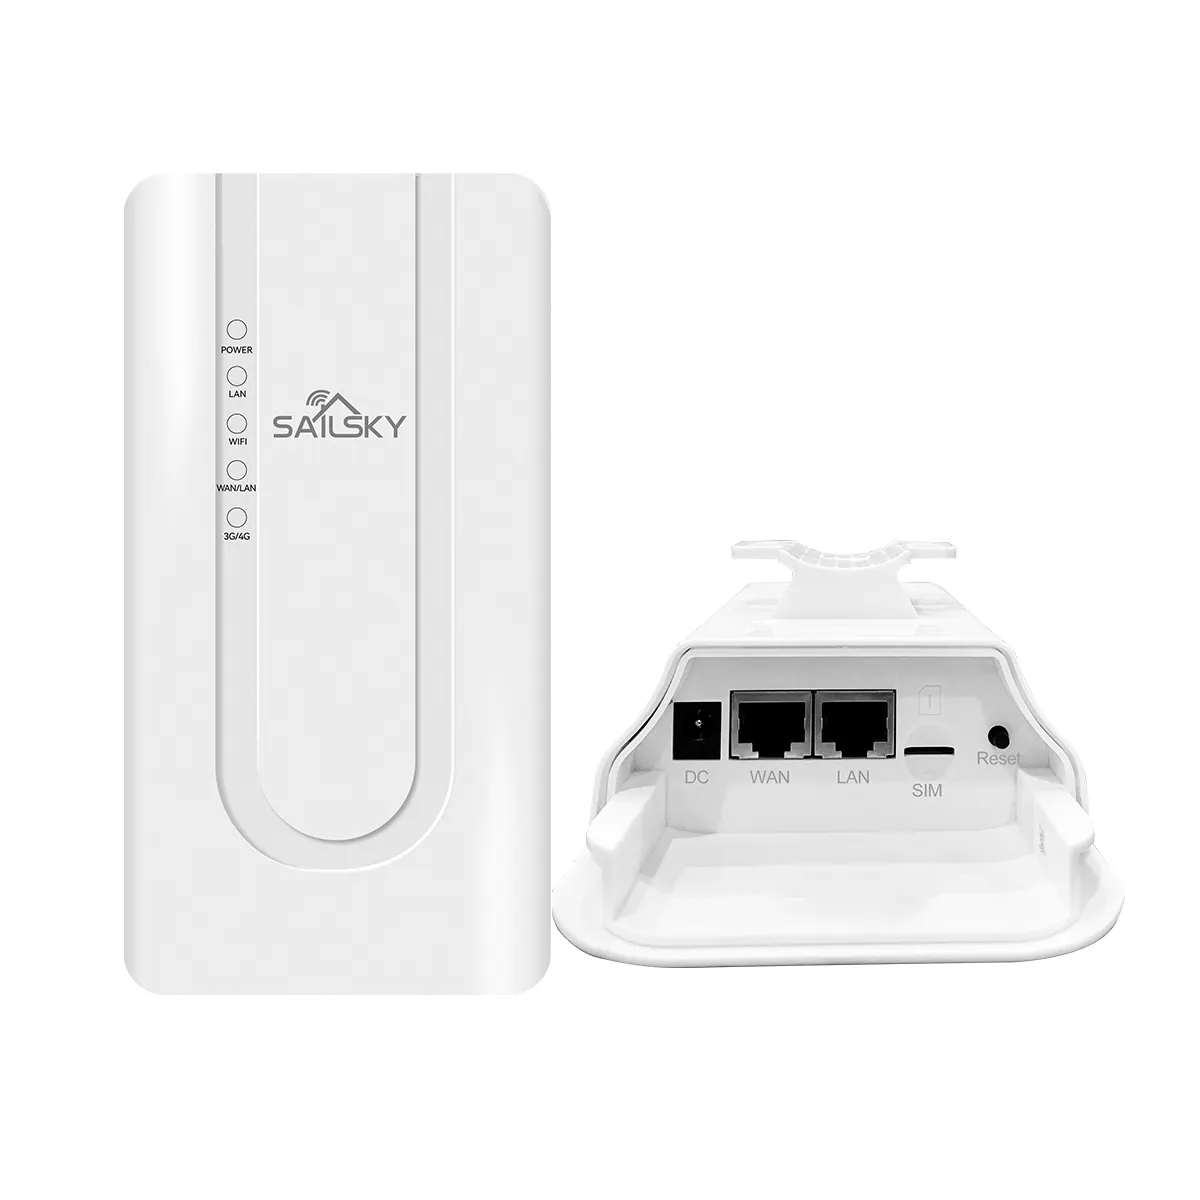 Outdoor 4G CPE Router impermeável IP65 Router sem fio de alta velocidade CAT4 3G/4G Wifi Router 4g Lte com slot para cartão Sim